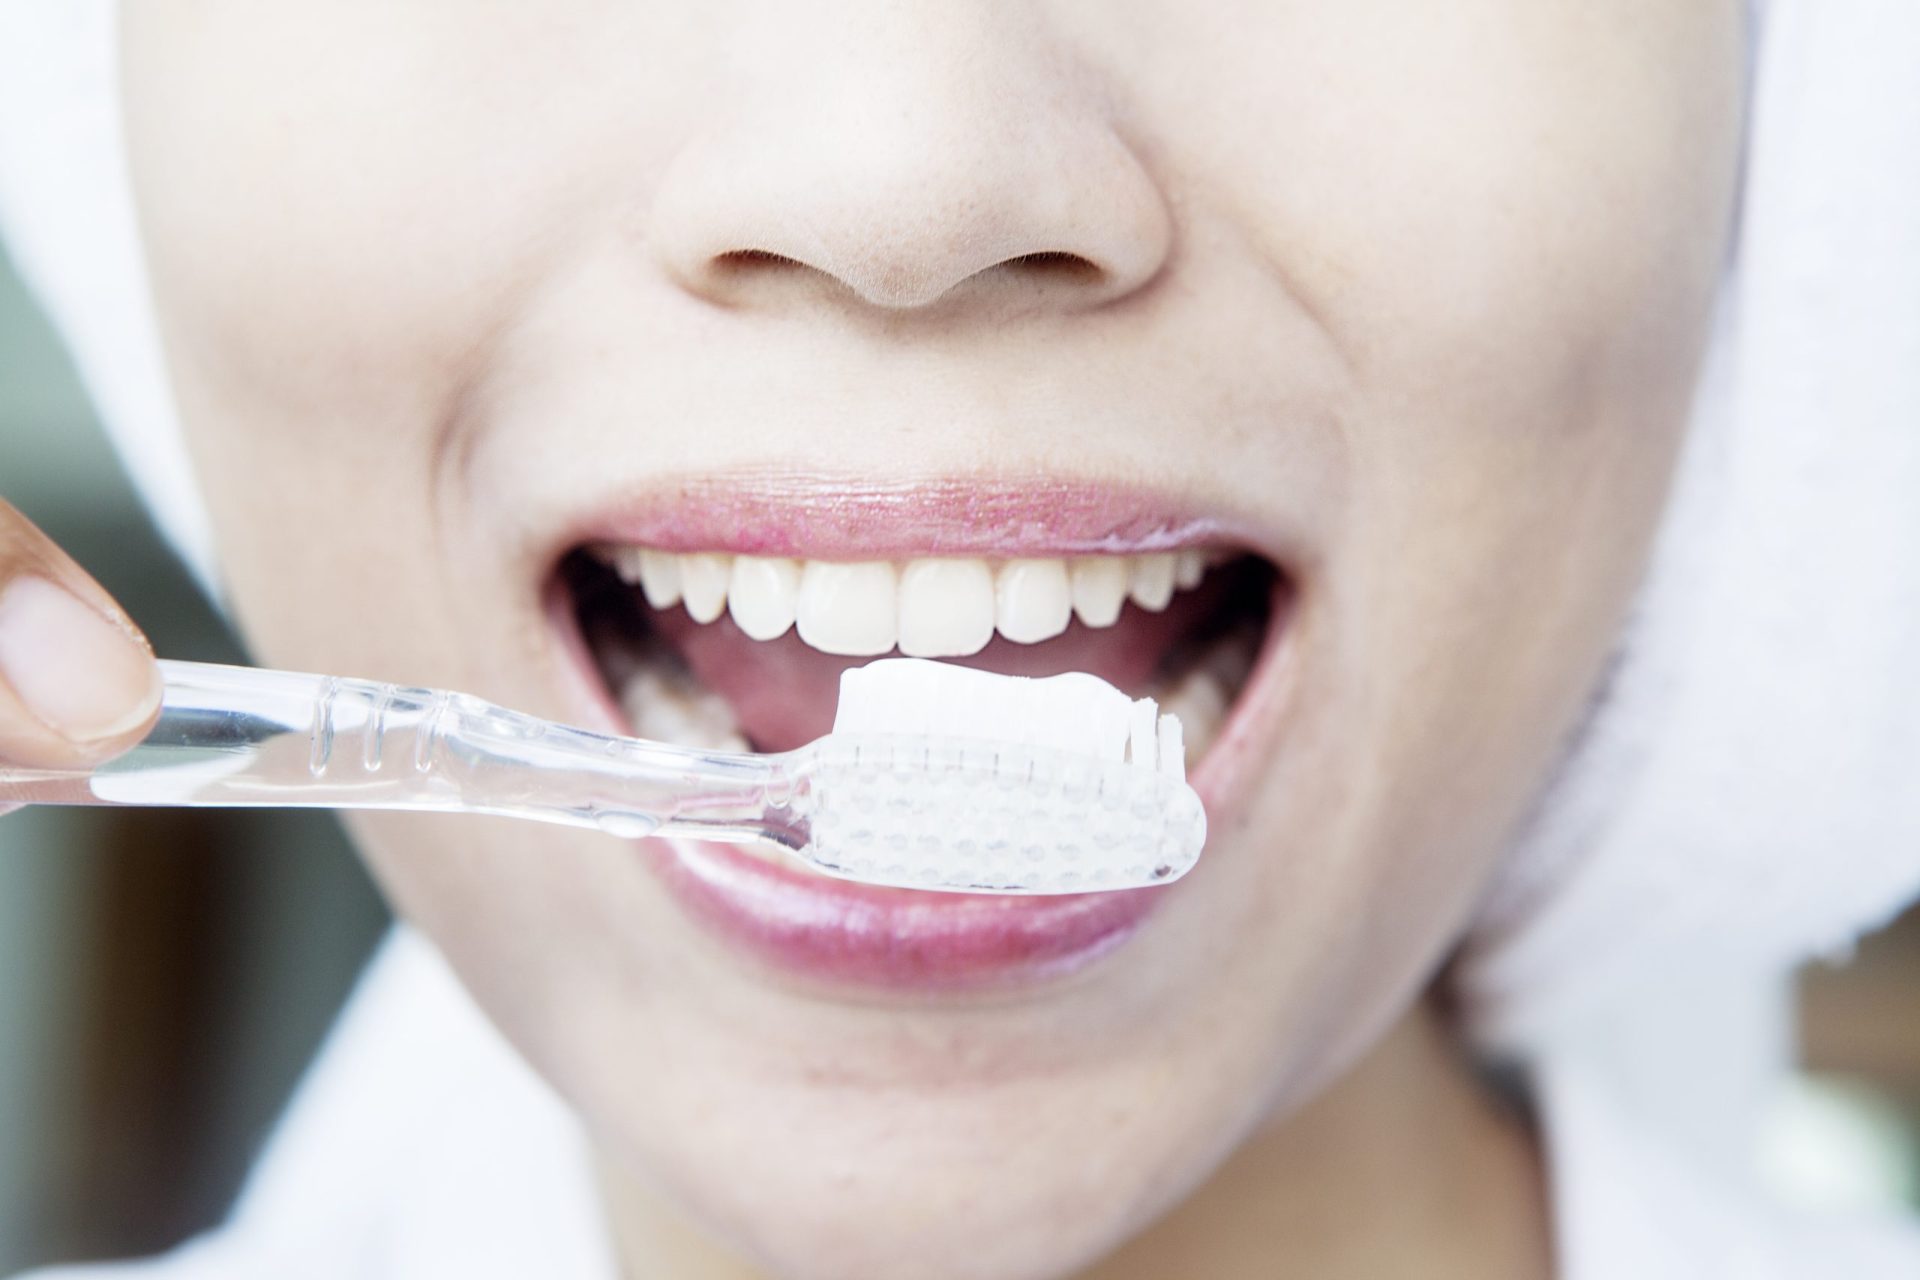 Pasta de dentes Colgate Total tem substância que pode ser cancerígena